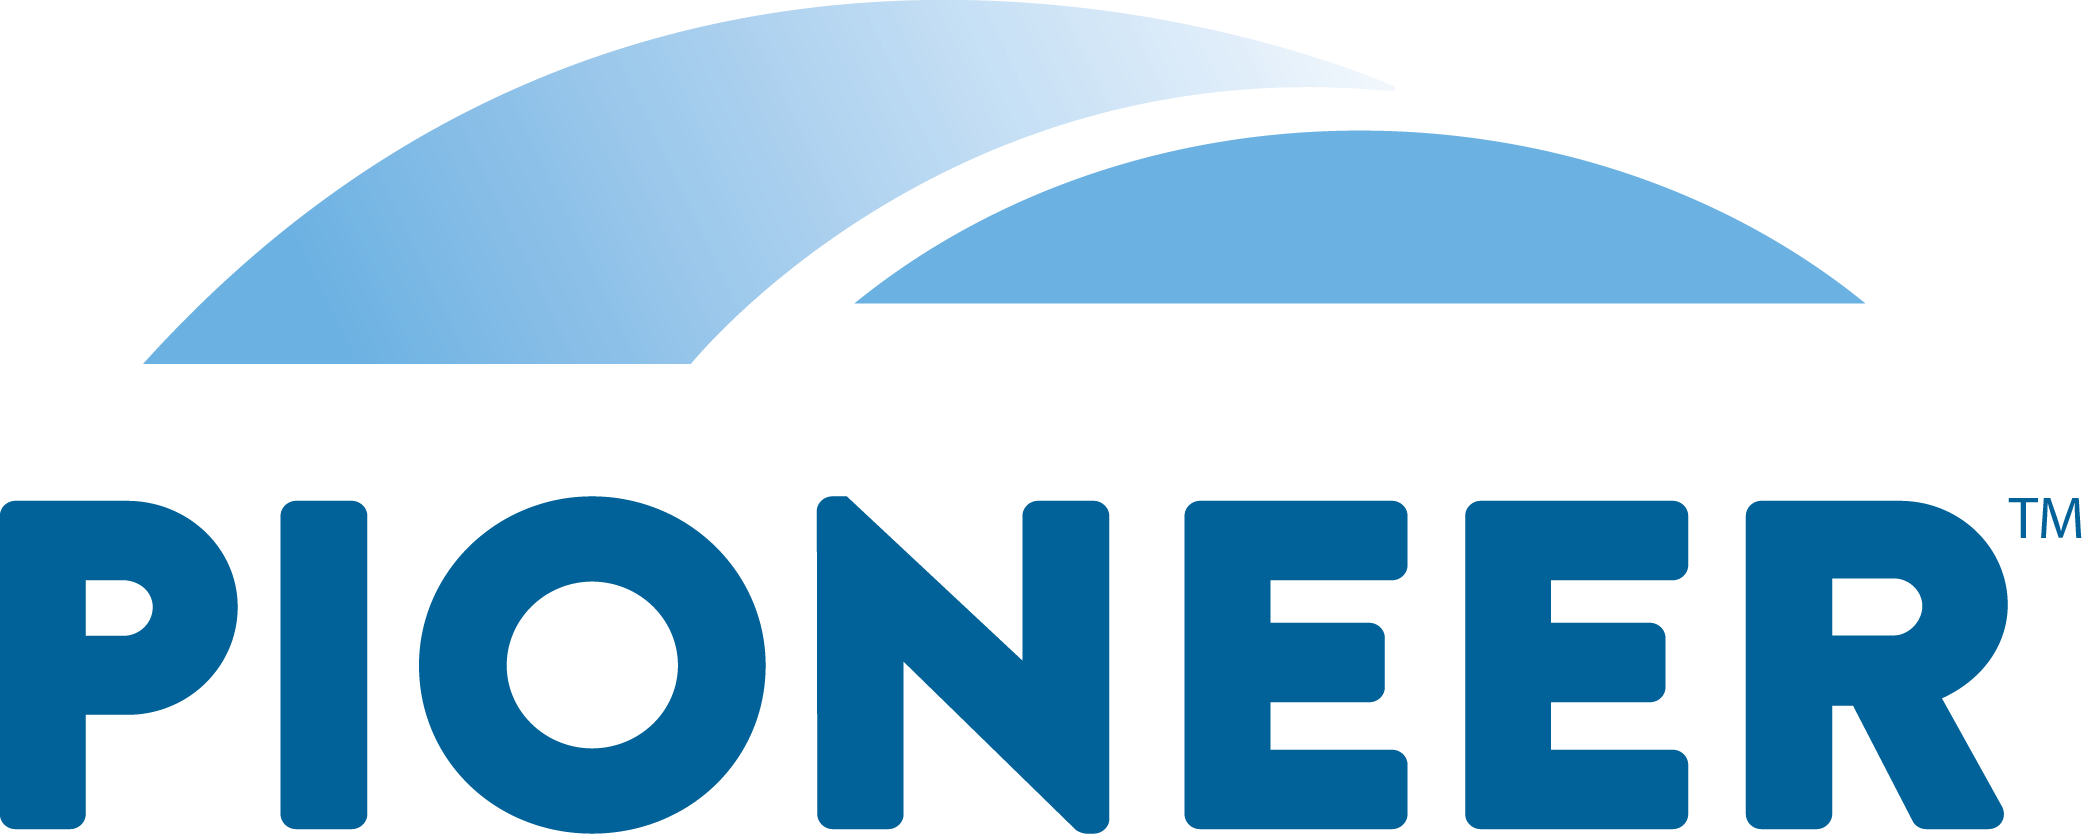 Pioneer color logo